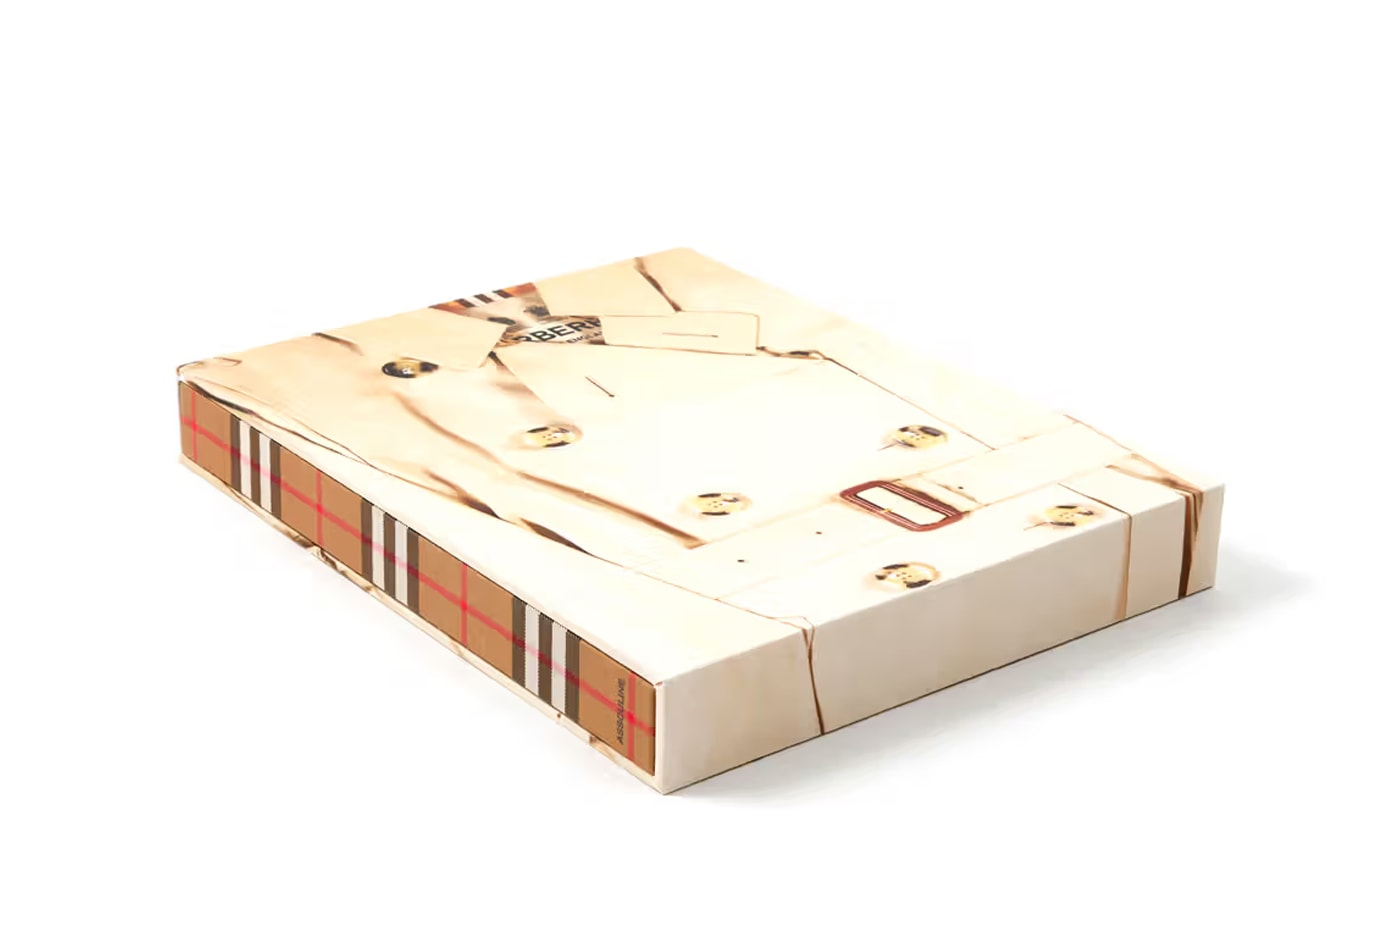 Burberry 正式推出全新精裝書籍，記錄品牌百年發展過程